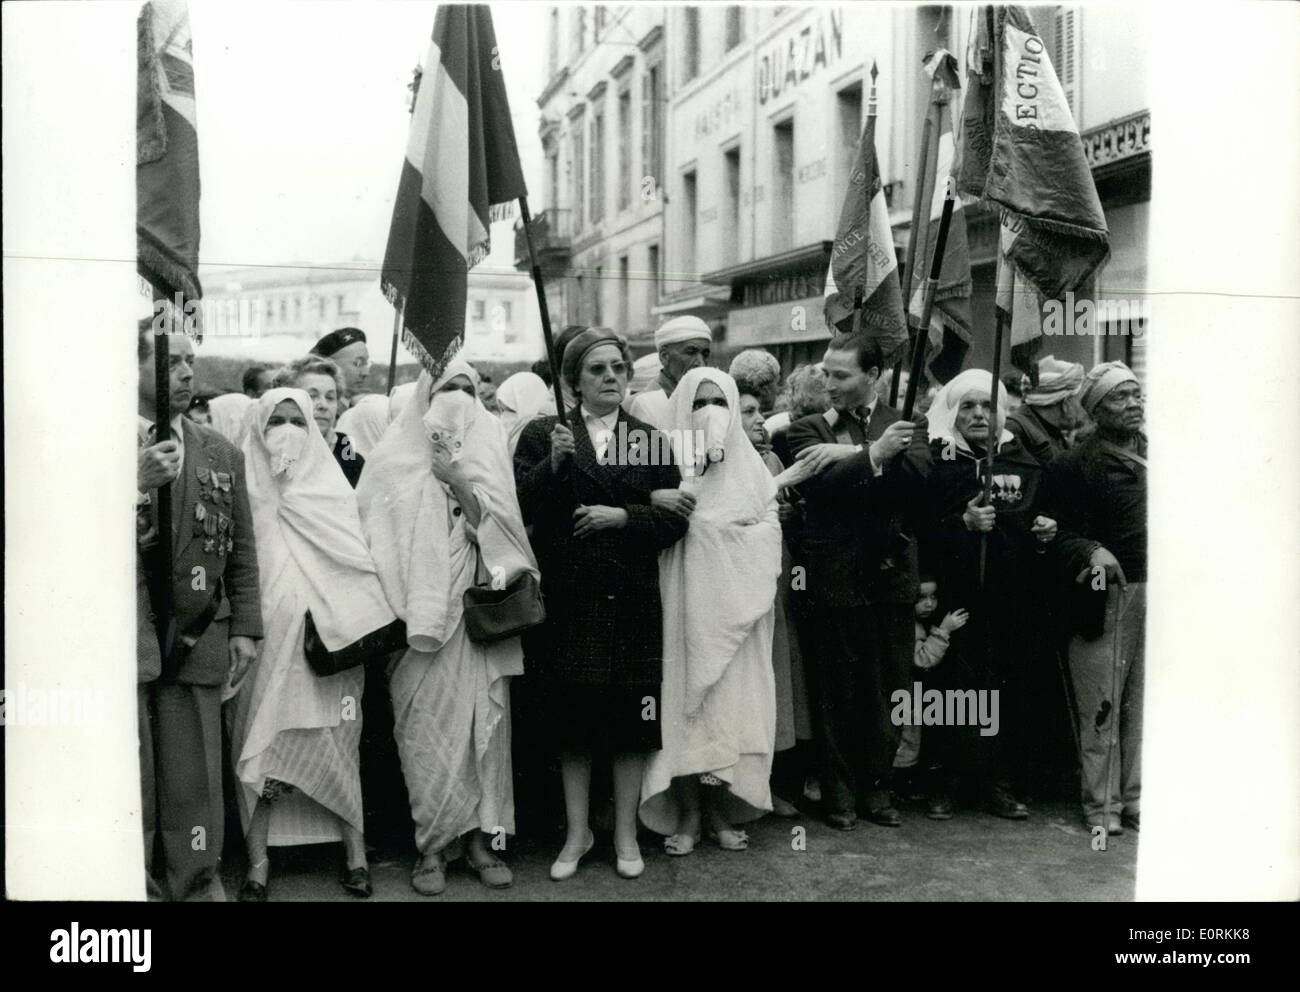 01 janv., 1960 - révolte en Alger OPS :- européenne et un peu voilé les femmes autochtones qui ont été vus dans la démonstration à l'appui des insurgés hier. Banque D'Images